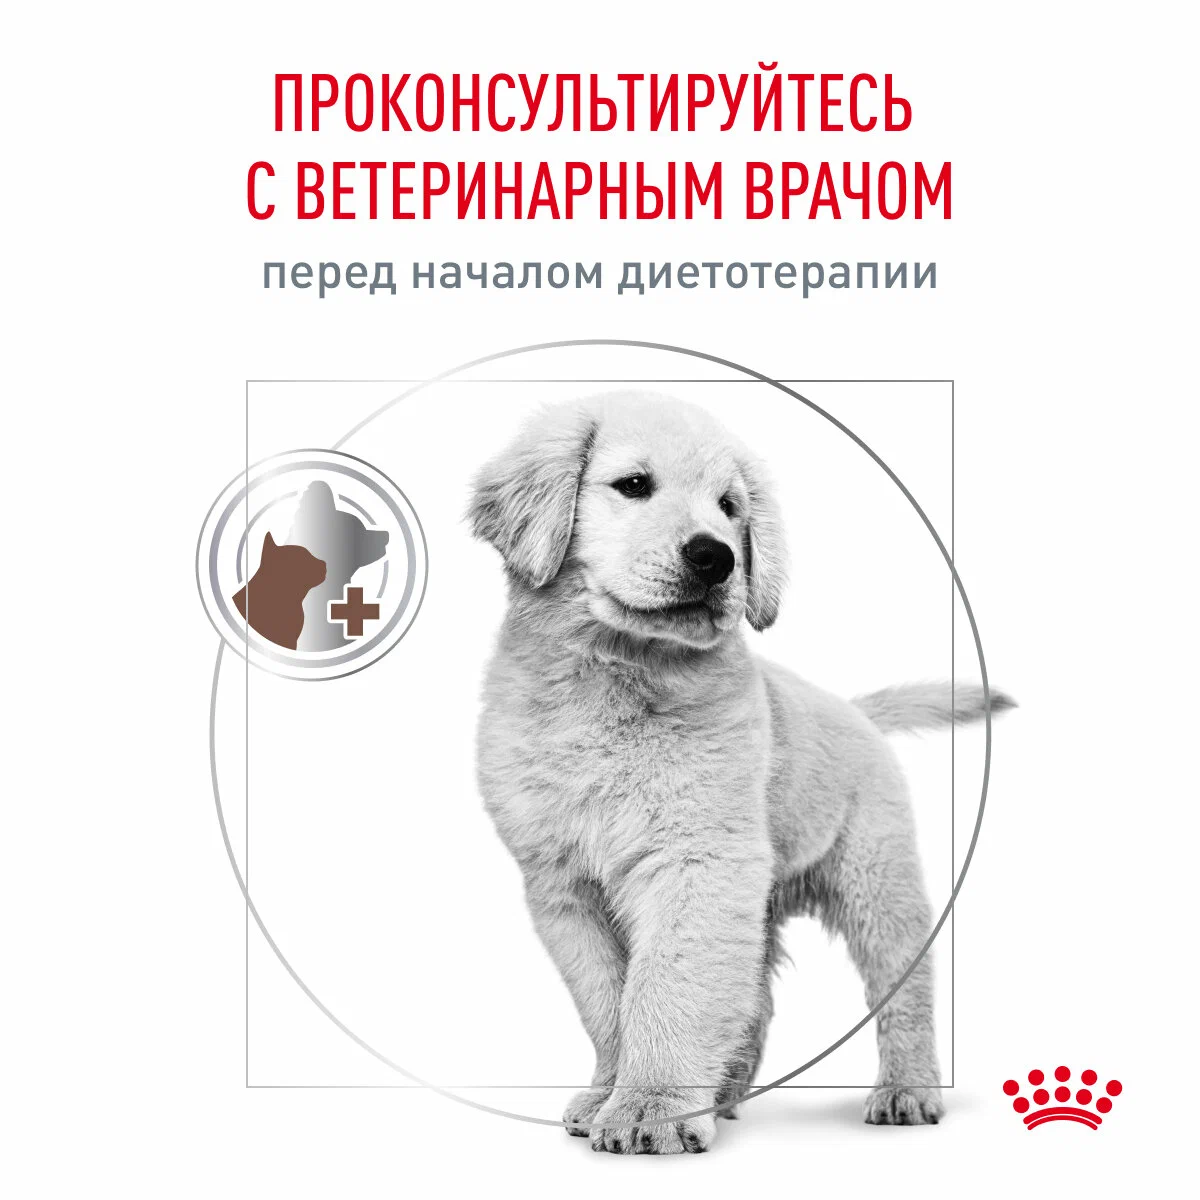 Сухой корм для щенков Royal Canin Gastrointestinal Puppy при расстройствах пищеварения 10 кг